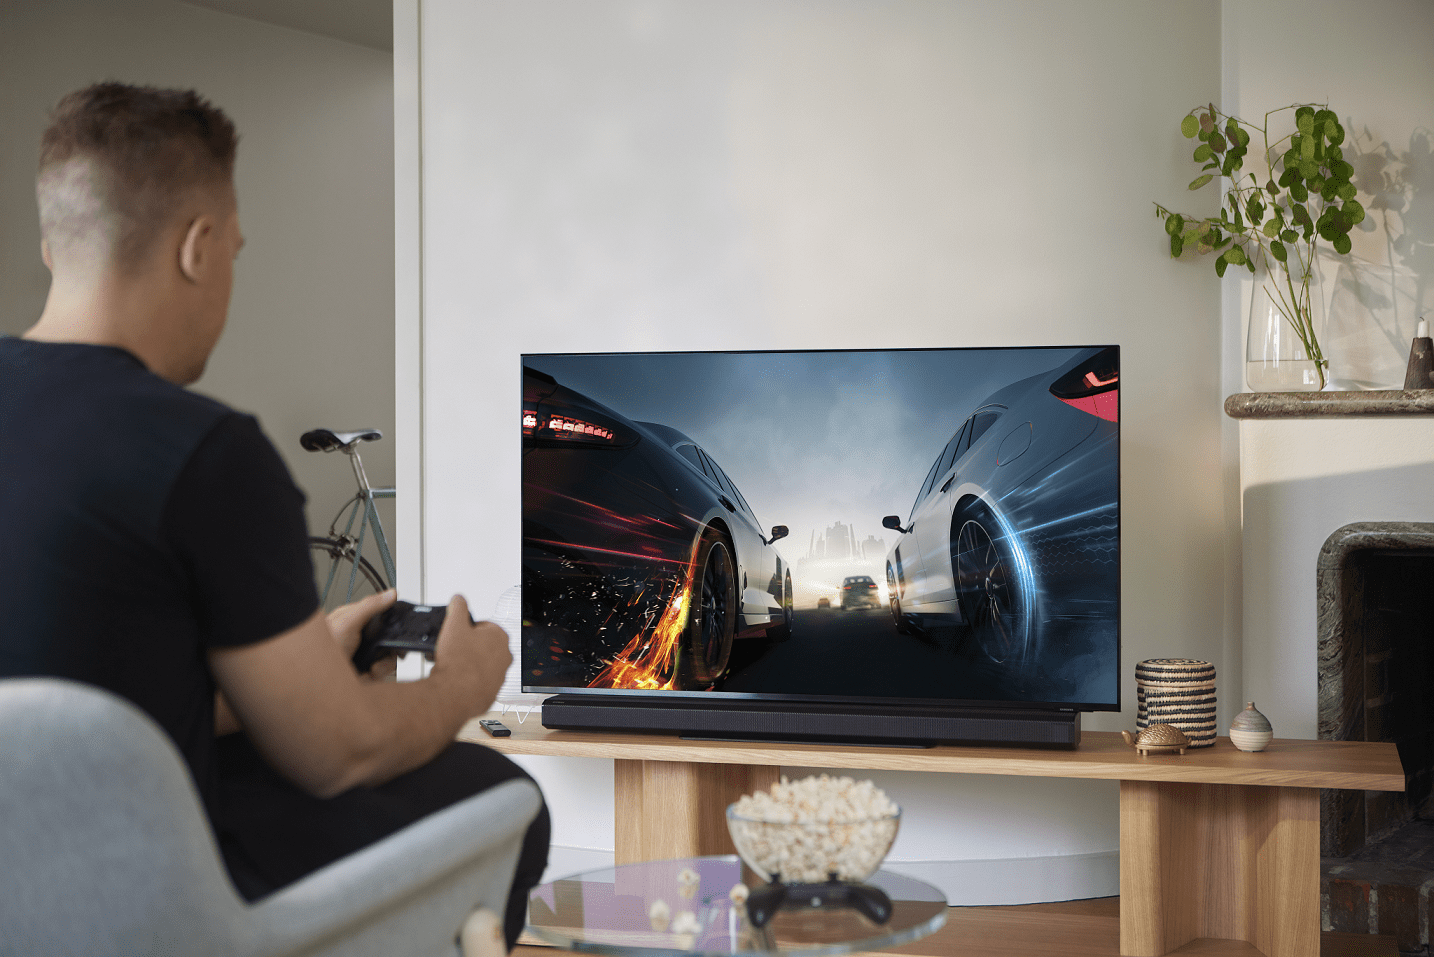 Gaming-ekspertens anbefalinger til den gode gaming-oplevelse på TV’et